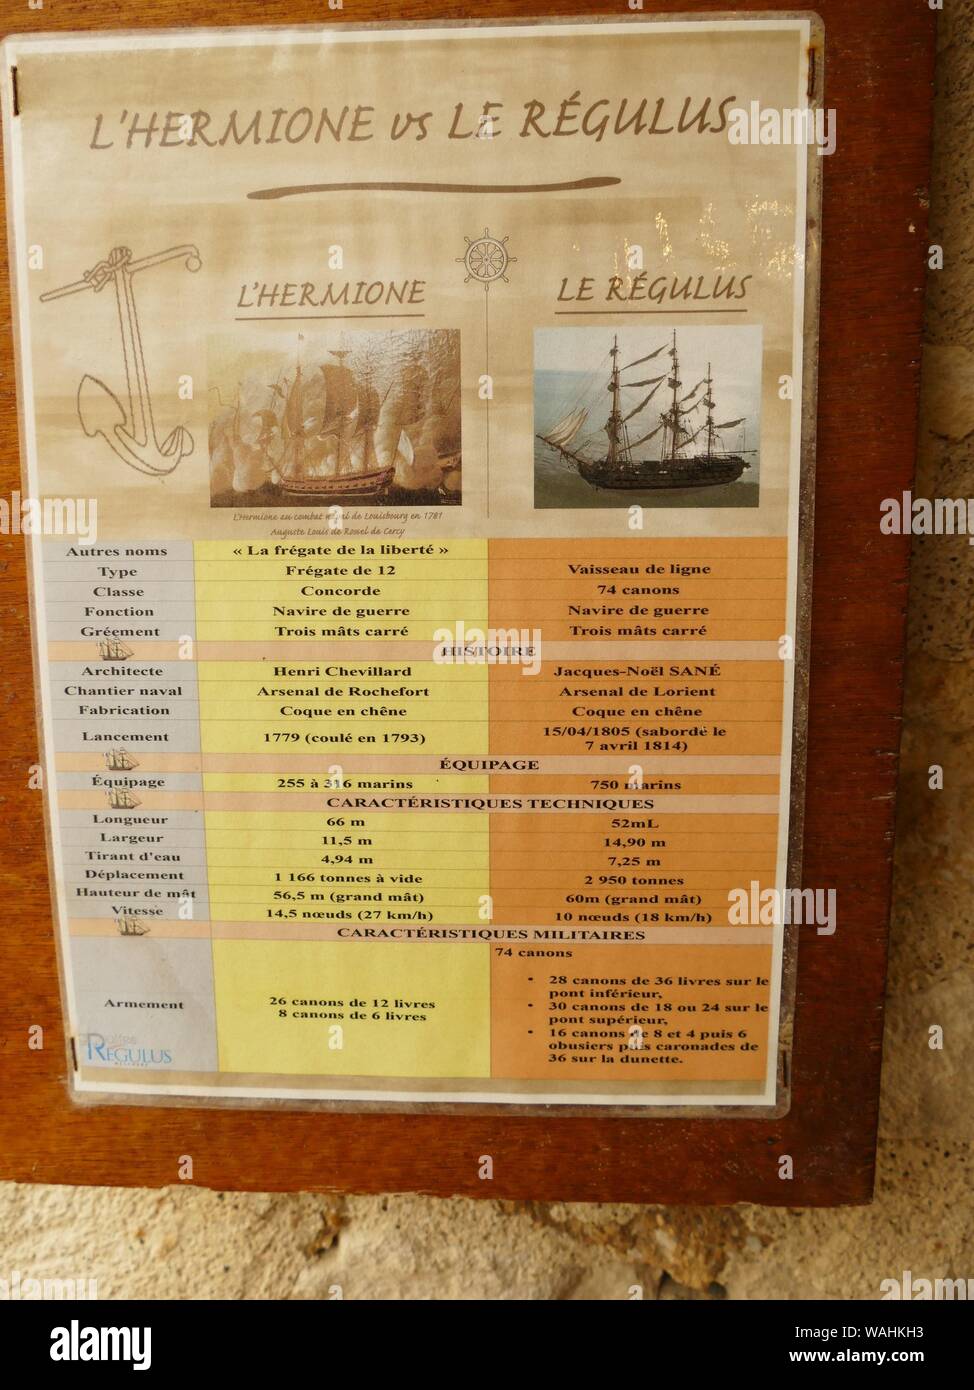 Comparition zwischen L'Hermine, die im Rahmen der Revolution und der Regulus, die unter Napoleon dem Windlaufgitter war sank Stockfoto